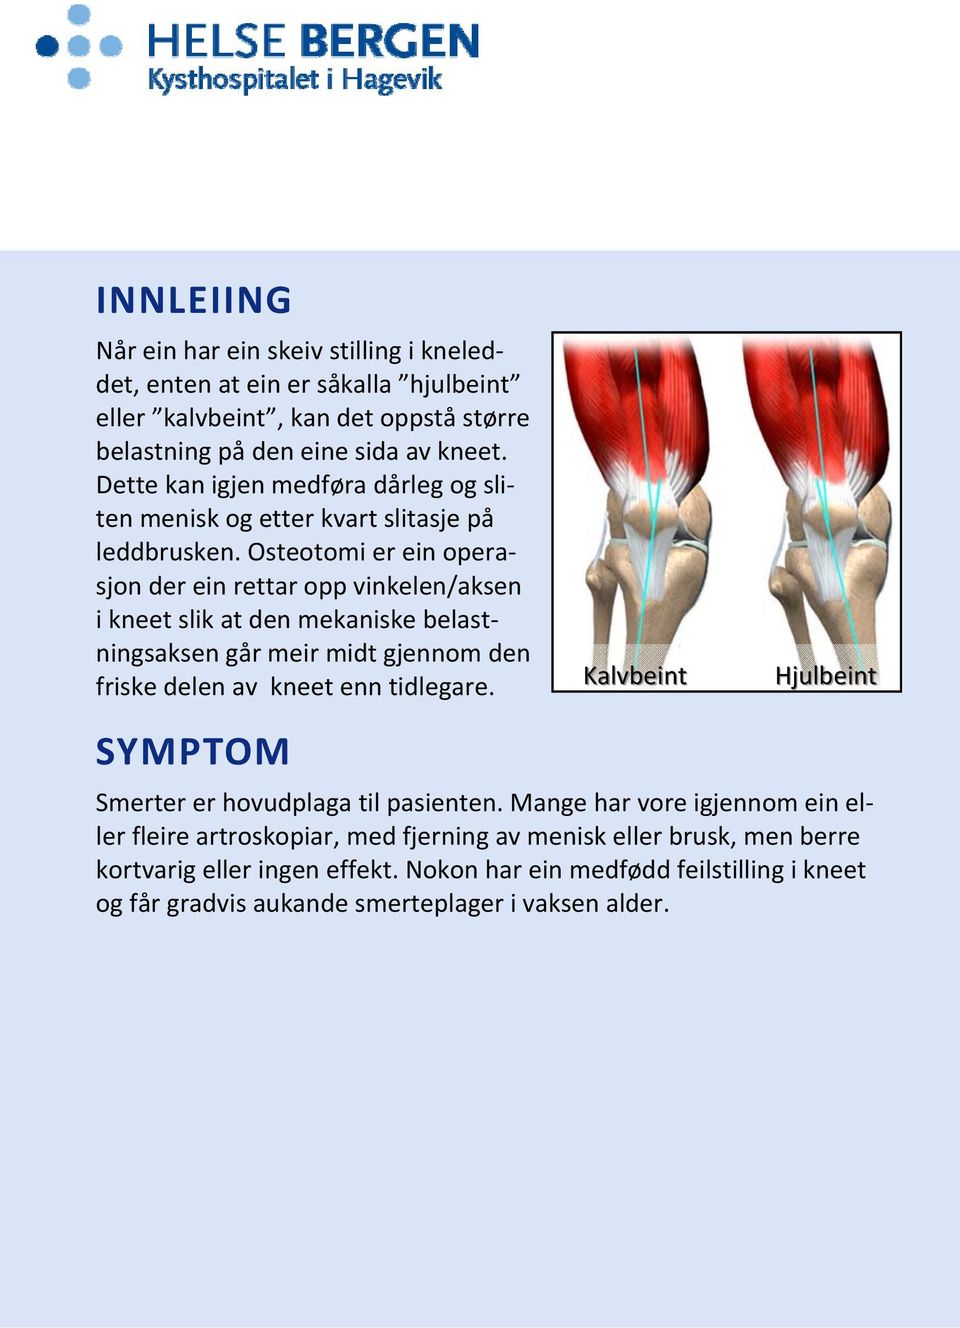 Osteotomi er ein operasjon der ein rettar opp vinkelen/aksen i kneet slik at den mekaniske belastningsaksen går meir midt gjennom den friske delen av kneet enn tidlegare.